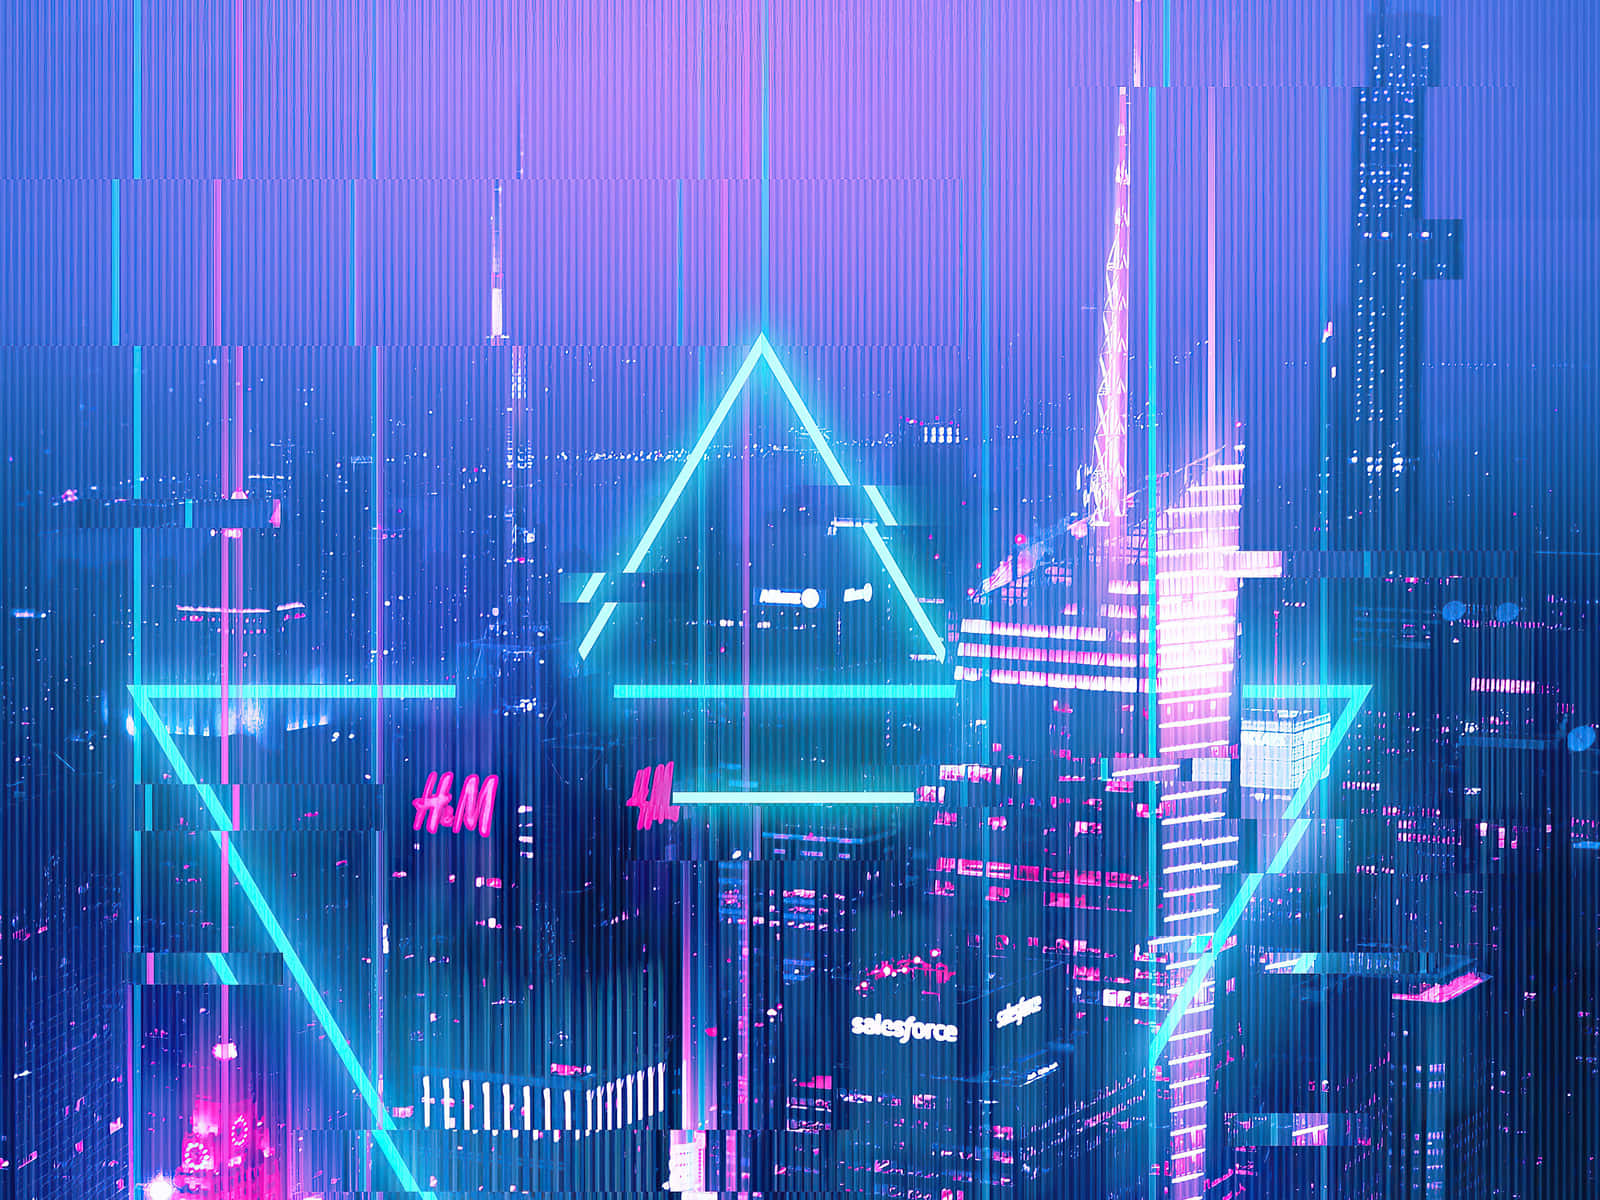 Cyberpunk Ronin in a Neon City - HD Mobile Walls